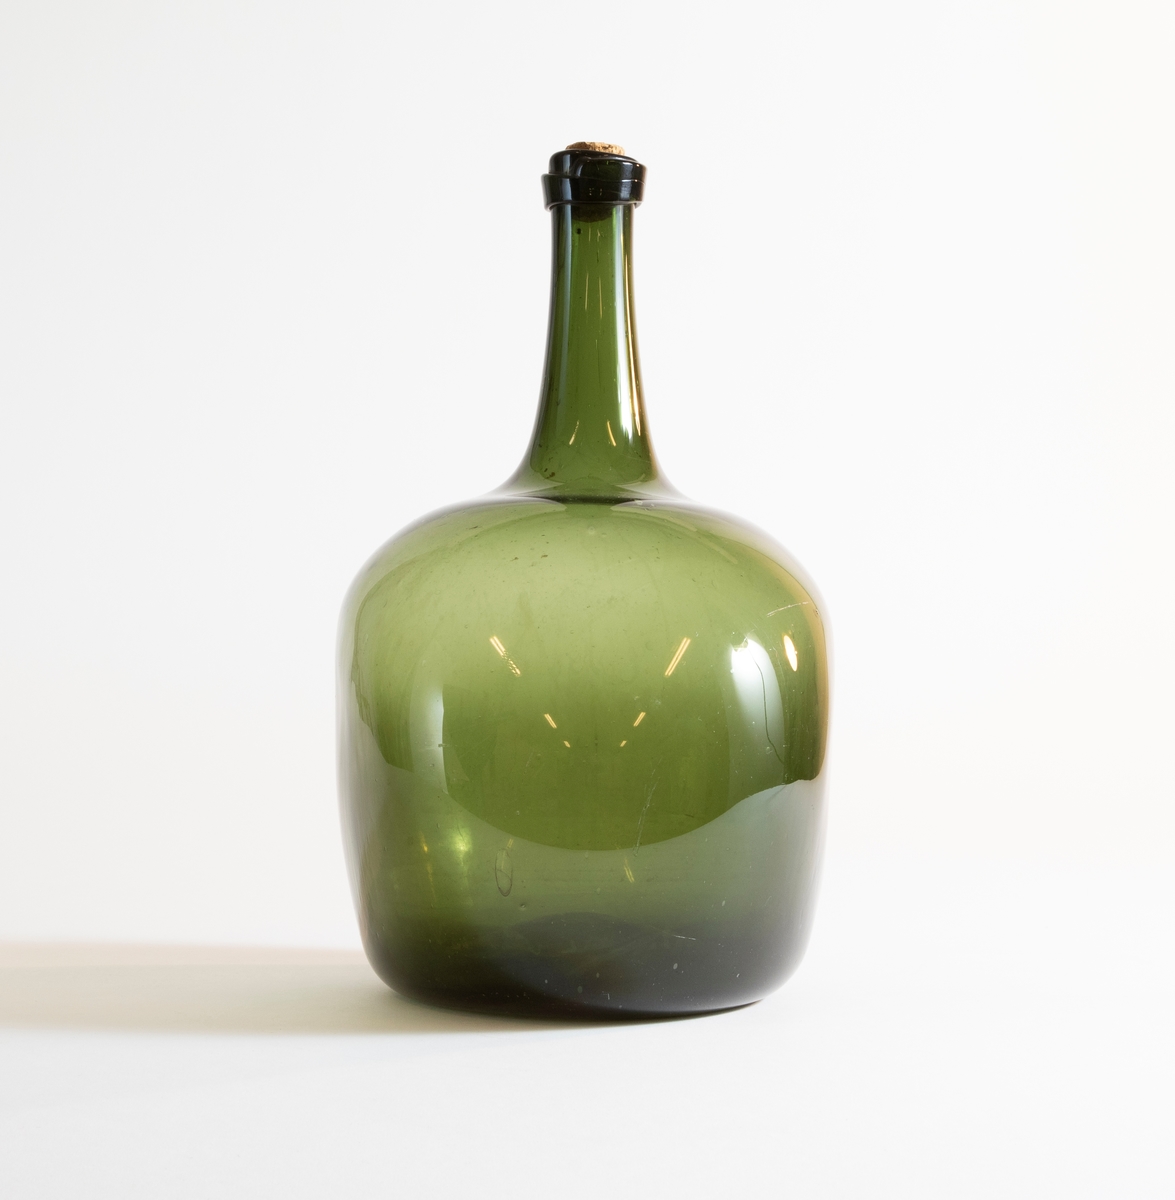 Flaska av grönt glas med tillplattad sfärisk form och hög hals. Del av kork sitter kvar i mynningen.